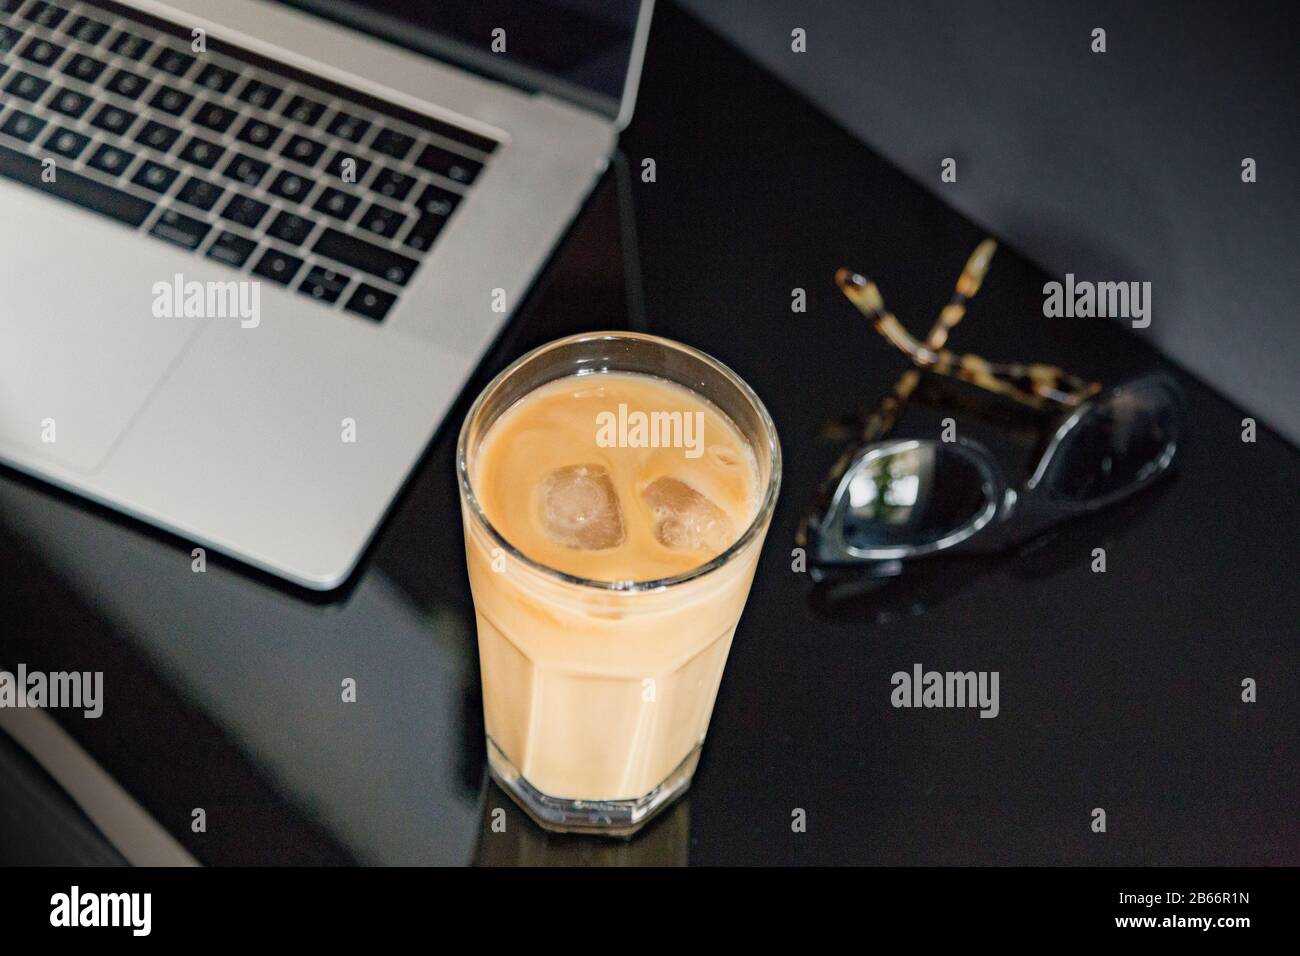 Rinfrescante caffè ghiacciato in un ambiente di lavoro moderno con occhiali da sole e computer portatile/notebook. Ancora la disposizione di vita, lifestyle, commercio. Foto Stock